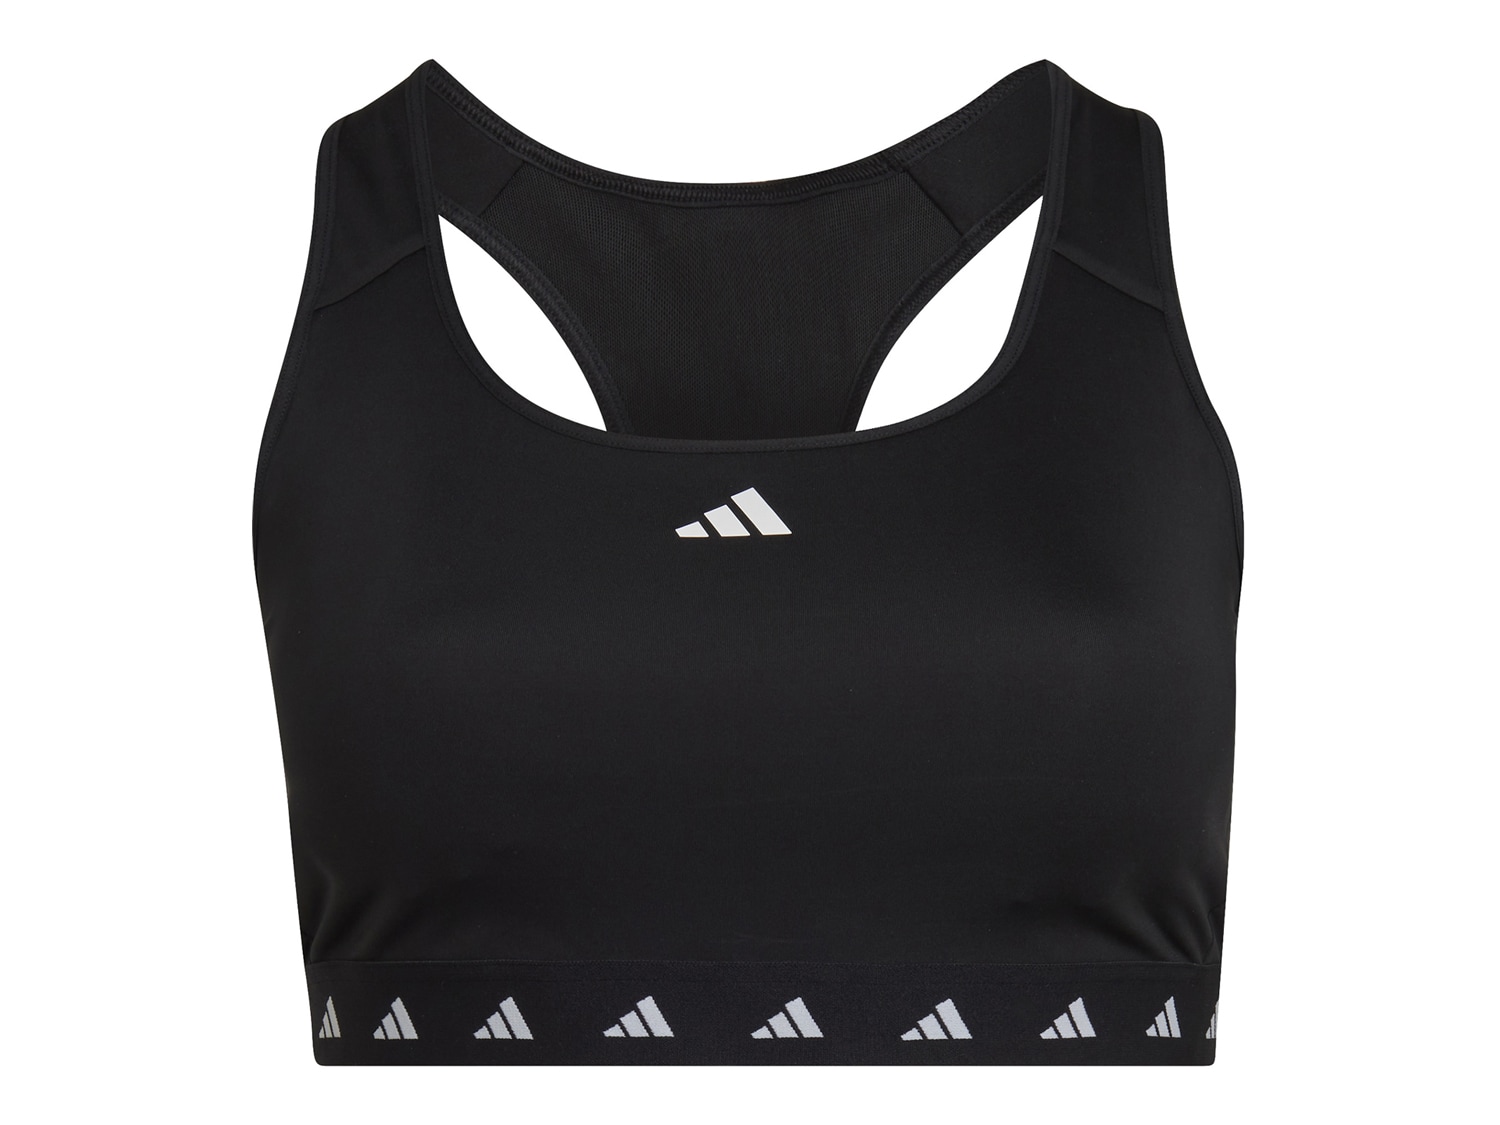 adidas Training Plus 3 Stripe design mid-support sports bra in dark white